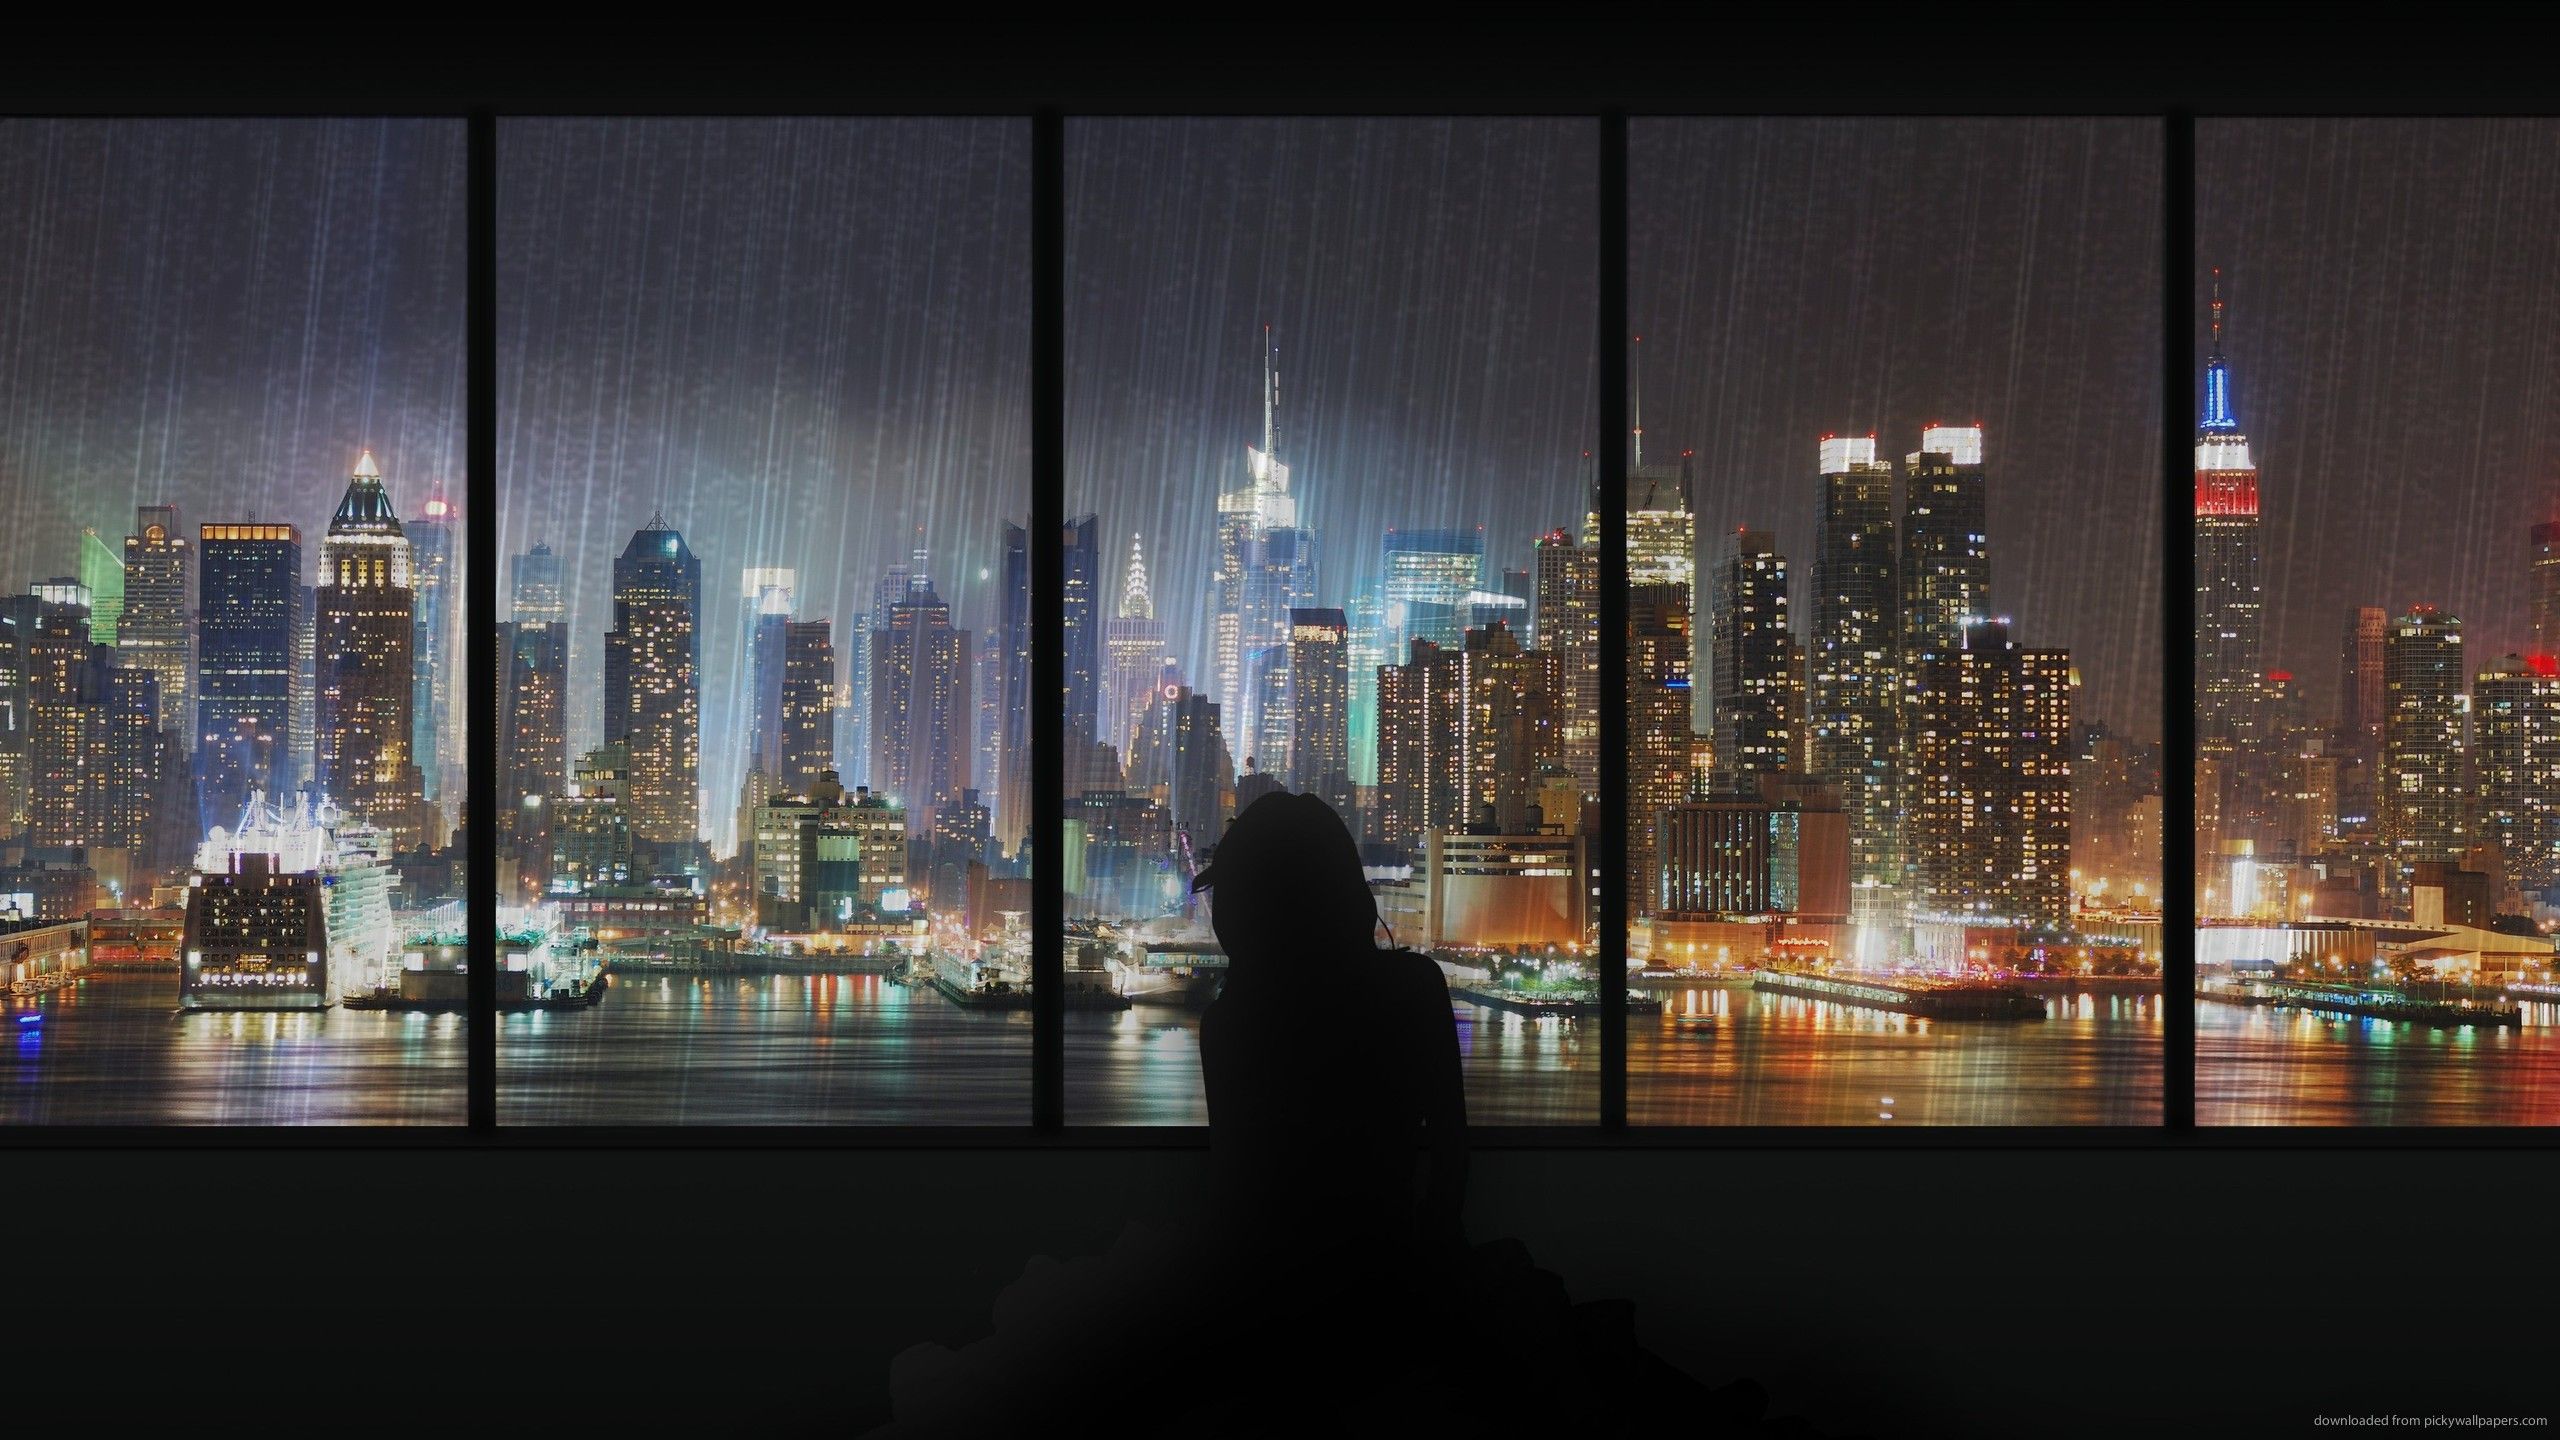 Rainy City at Night Wallpaper Free Rainy City at Night Background